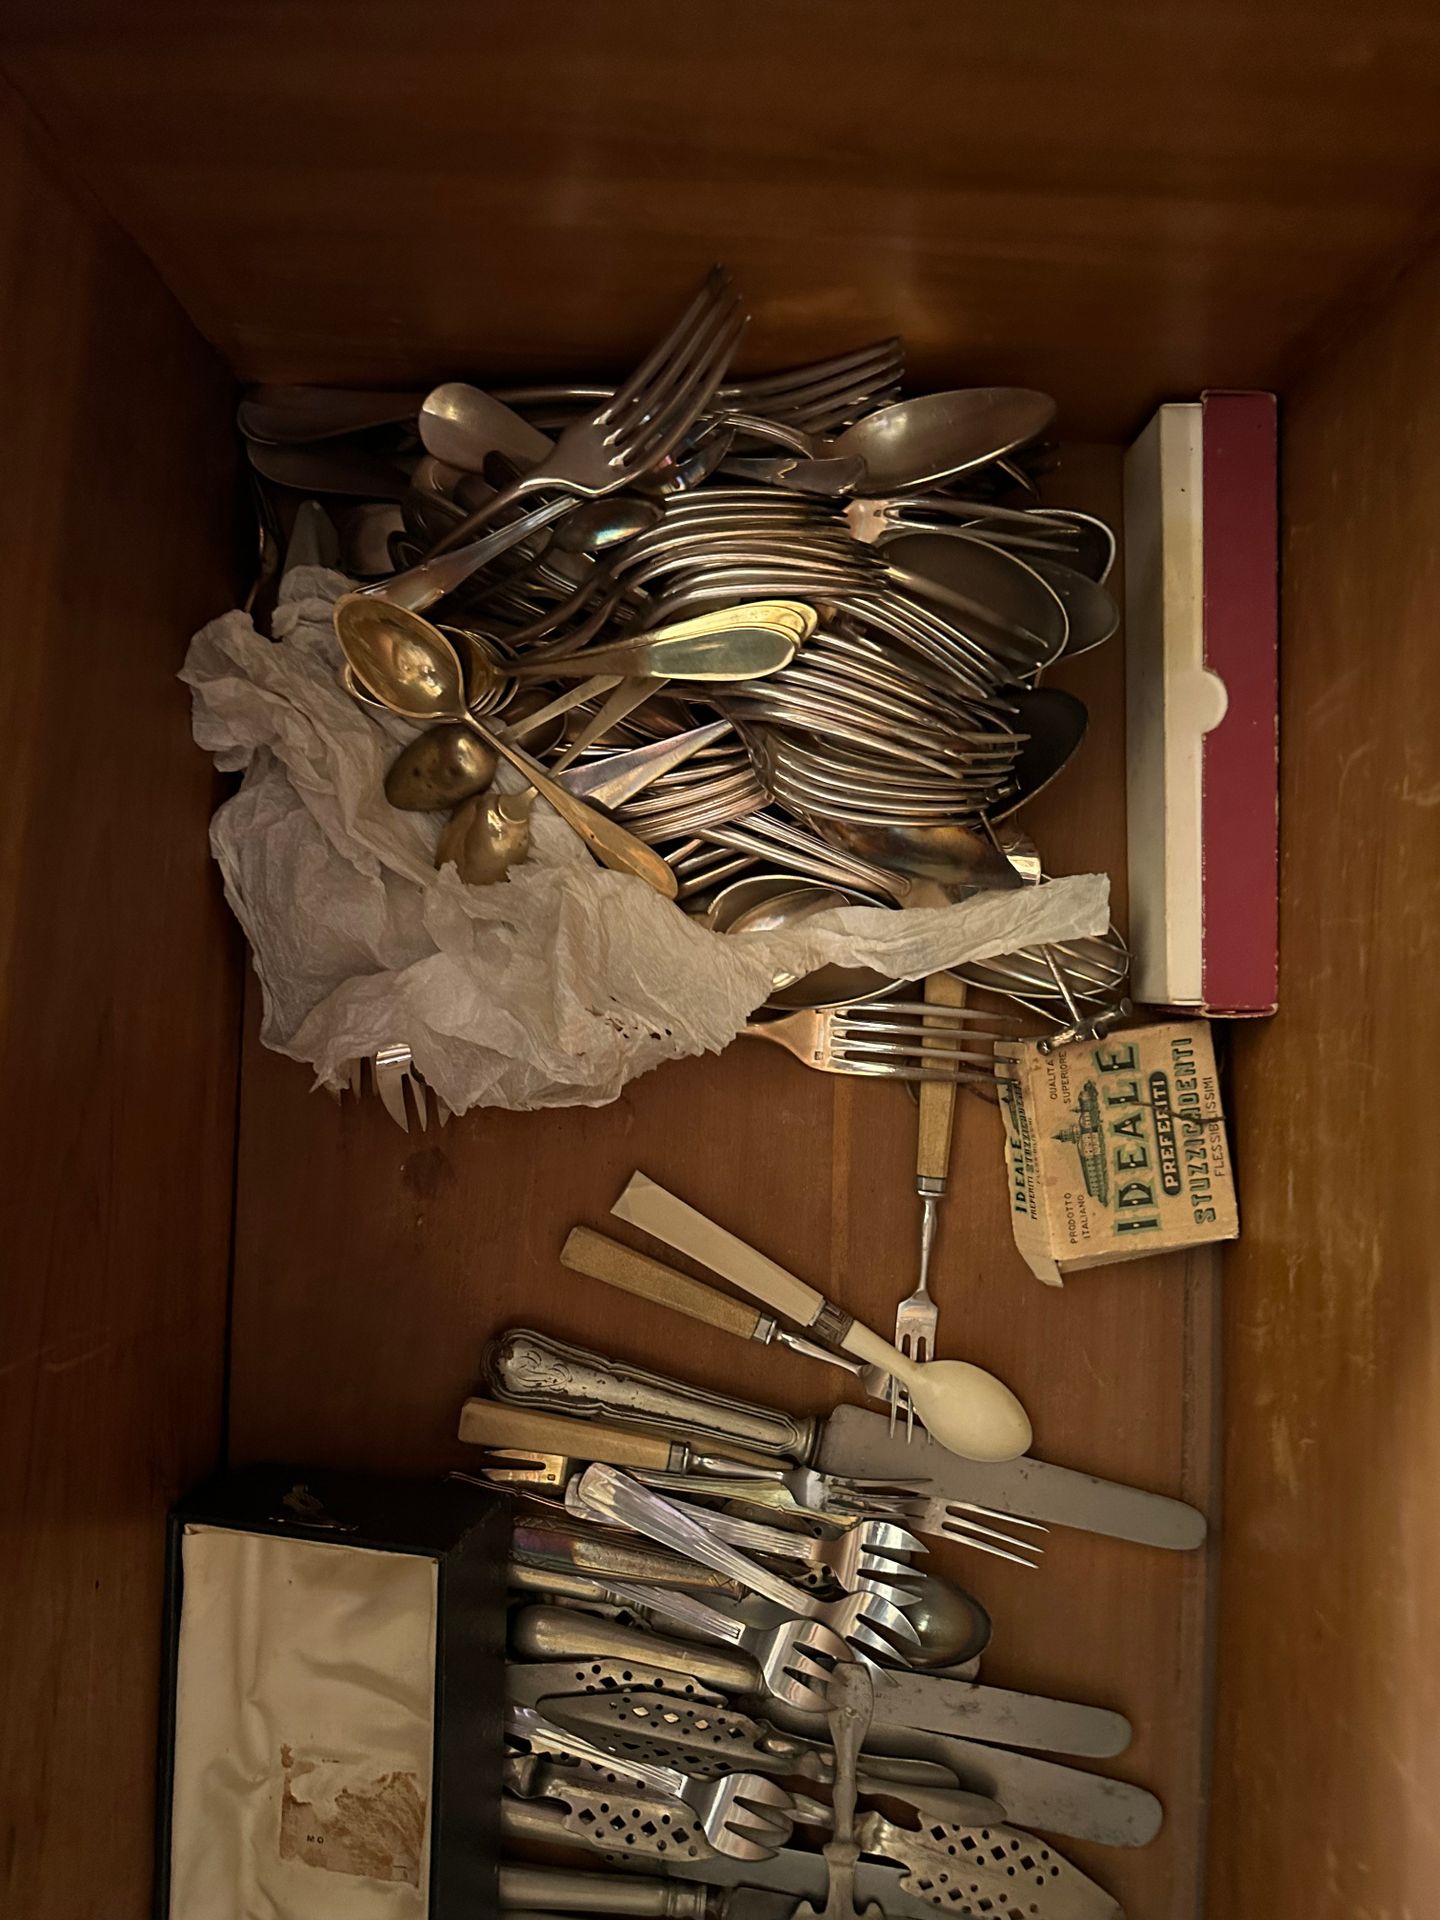 Fort lot de métal argenté Incluidos tenedores, cucharas, vajilla